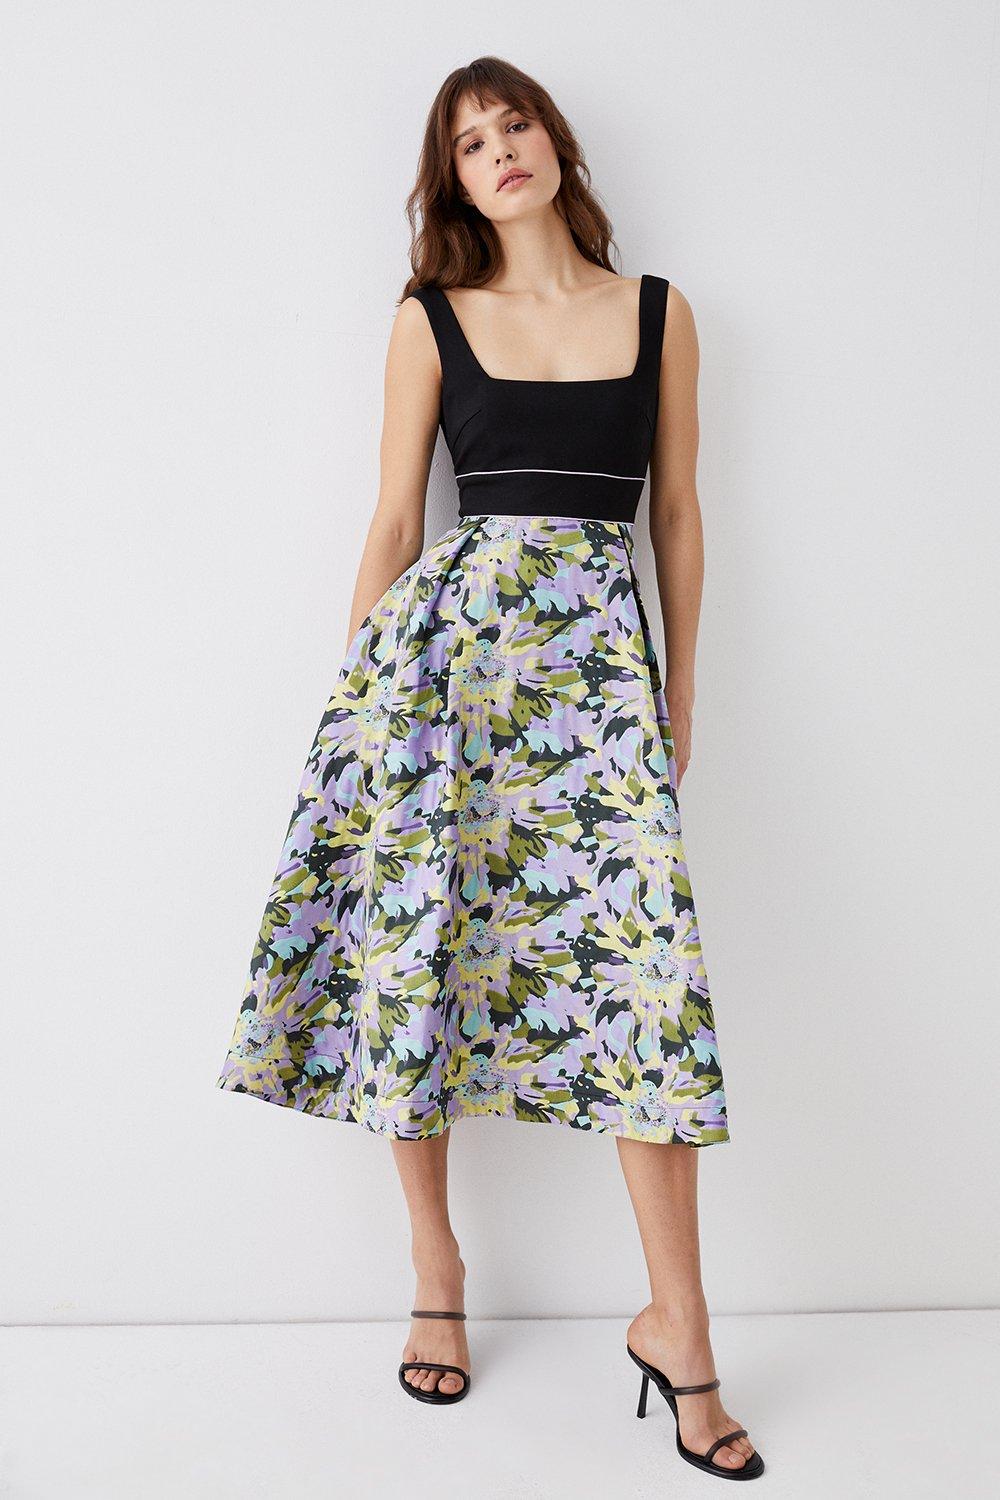 2 In 1 Square Neck Ponte Top Jacquard Skirt Midi Dress